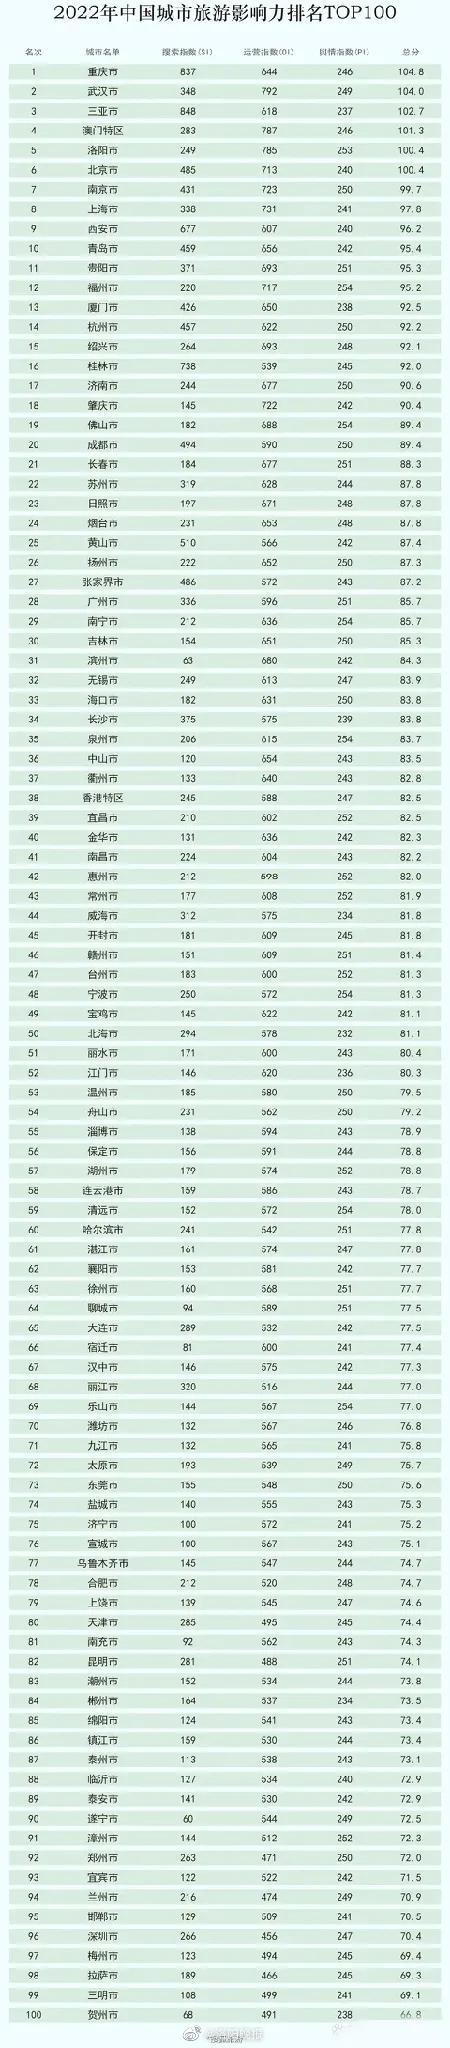 中国好玩的城市排行榜_中国最好玩的城市排行榜出炉!郑州、洛阳上榜